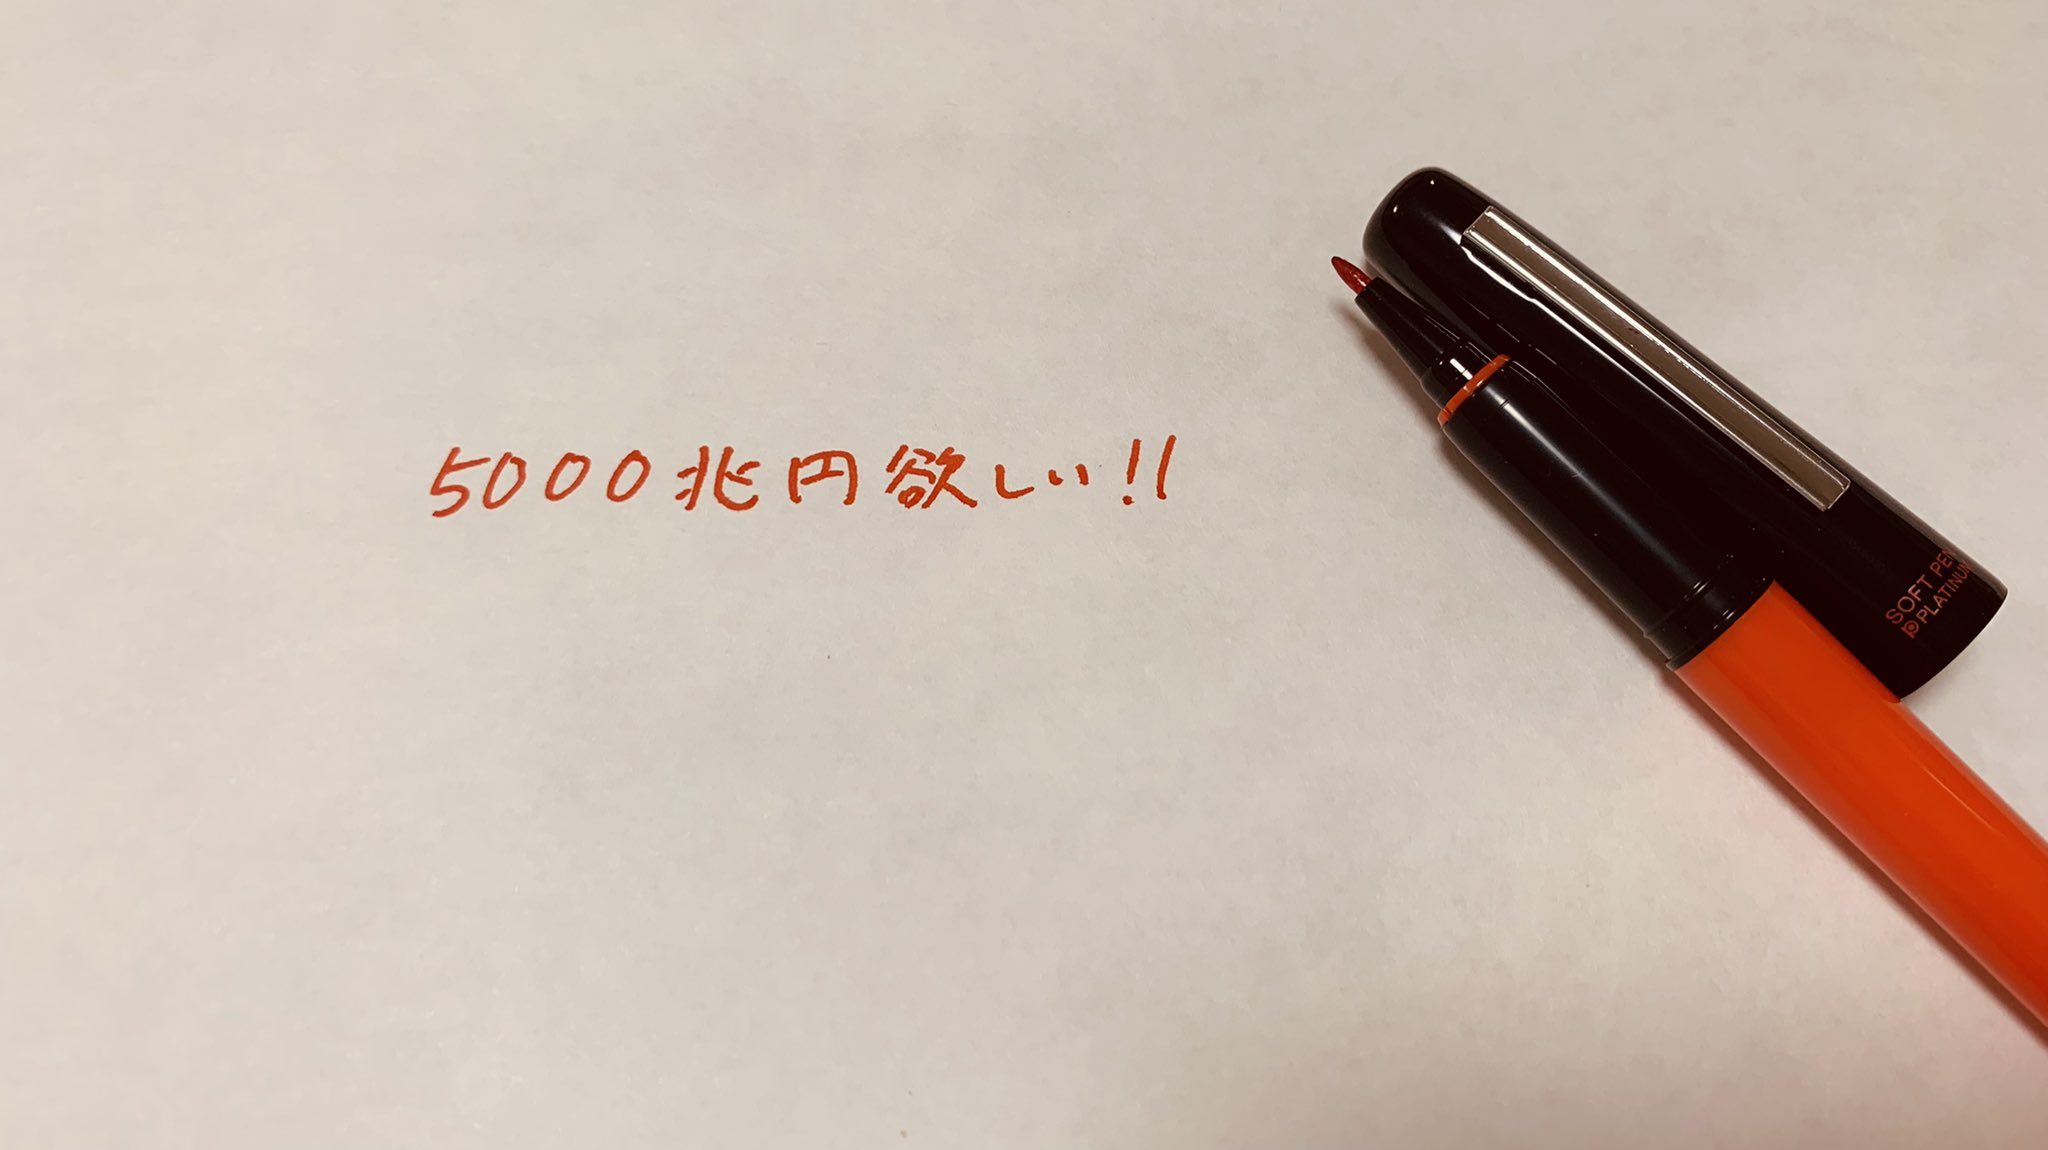 ゆりやま ｹﾞｰﾑと育児とﾊﾟｽﾞﾙと軌跡 学校の先生が使う赤ペン 買うたよ T Co 0s3rlr1v9t Twitter